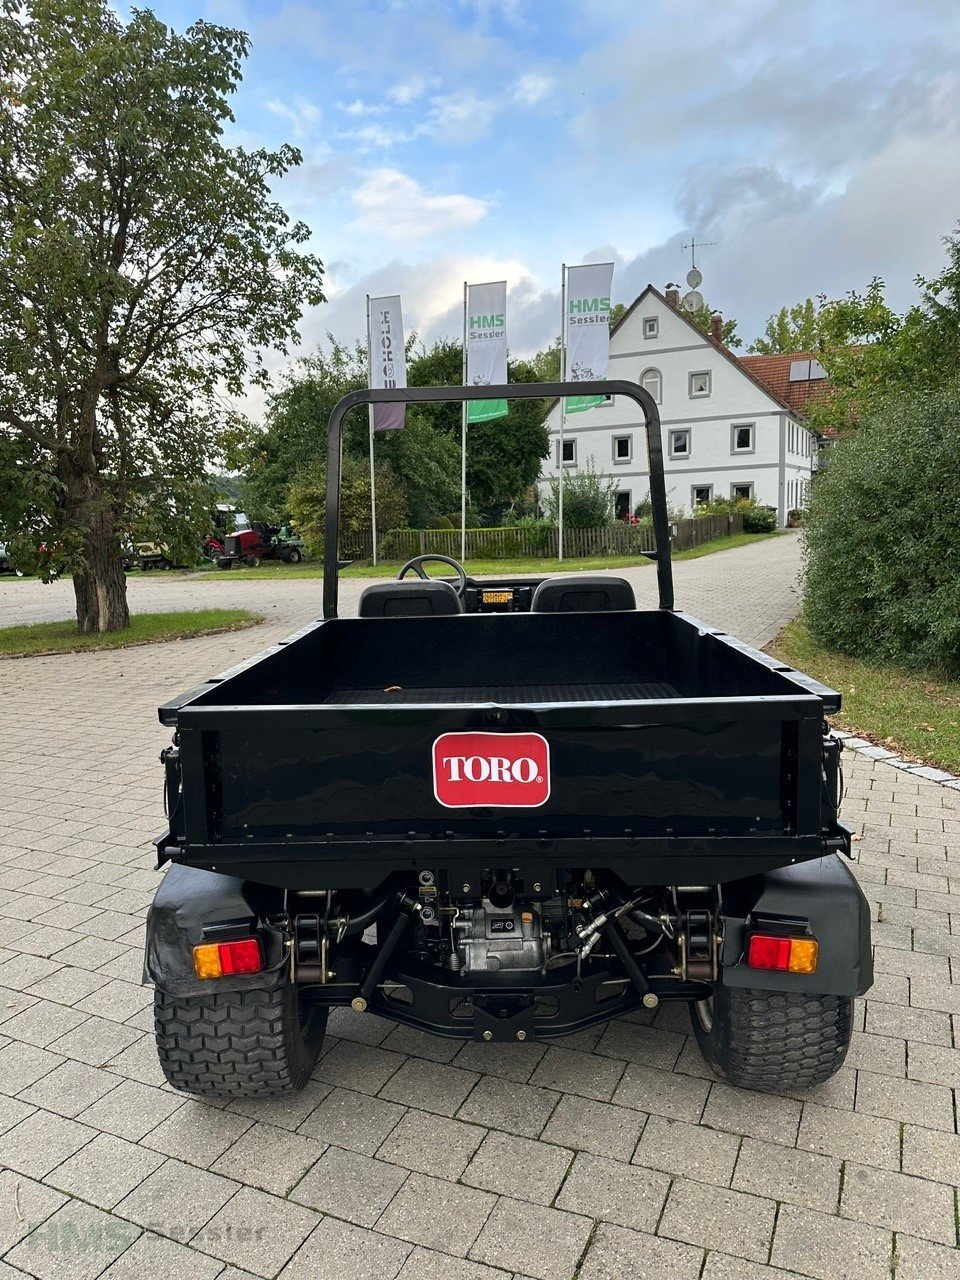 Kommunalfahrzeug типа Toro Workman HDX-D, Gebrauchtmaschine в Weidenbach (Фотография 3)